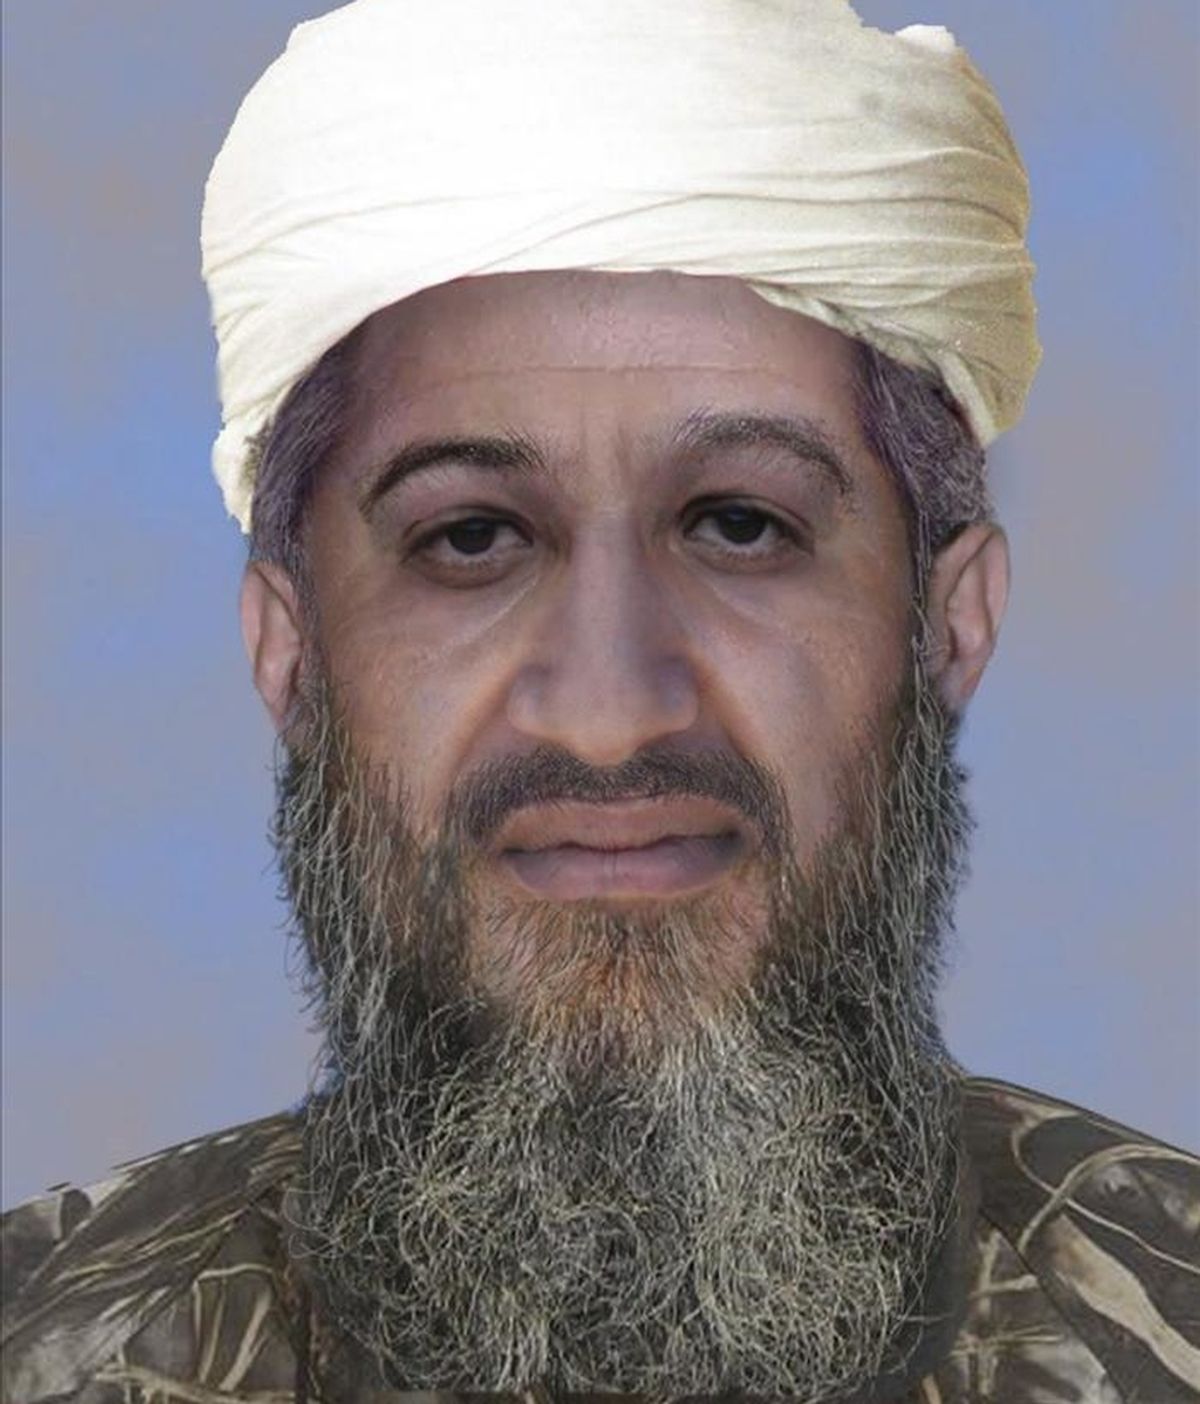 Fotografía de archivo facilitada el 15 de enero de 2010 por el FBI que muestra la "progresión de edad" del líder de Al Qaeda, Osama Bin Laden, realizada por medios digitales para mostrar el aspecto físico que podría tener en la actualidad. EFE